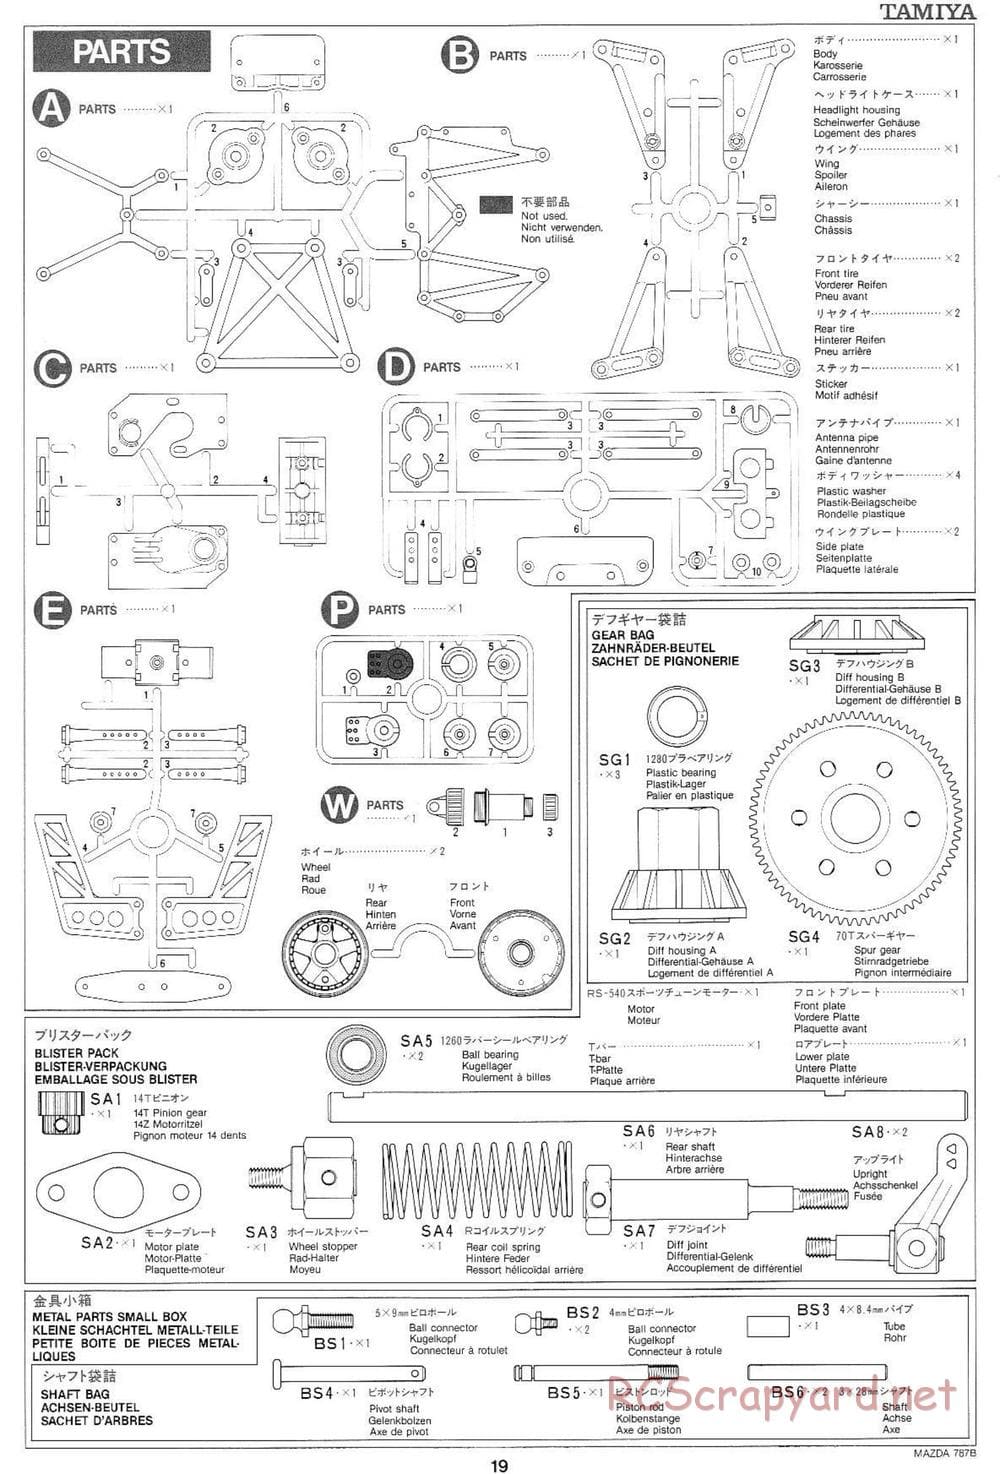 Tamiya - Mazda 787B - Group-C Chassis - Manual - Page 19